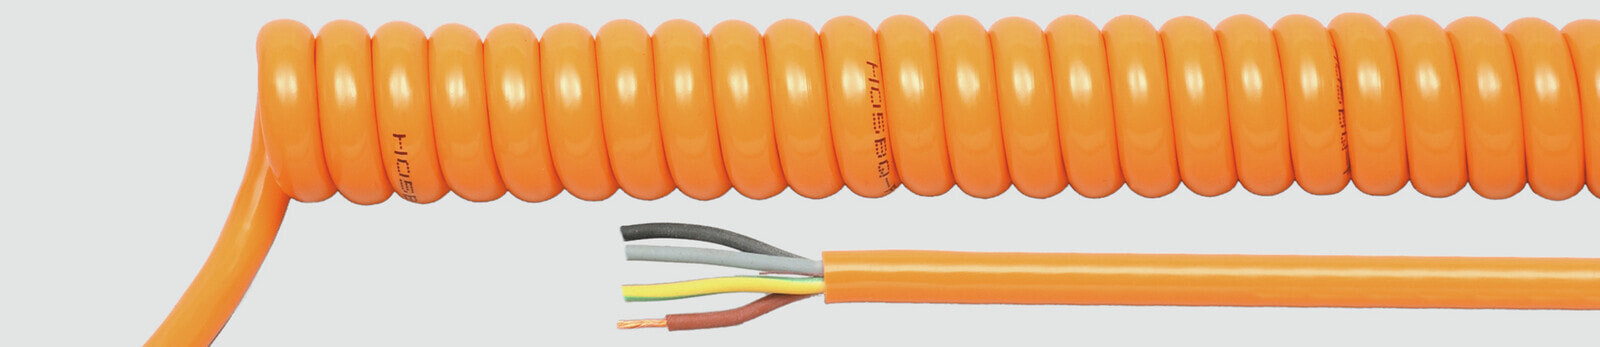 Helukabel 85376 - Low voltage cable - Orange - Cooper - 1.5 mm² - 232.2 kg/km - -25 - 70 °C